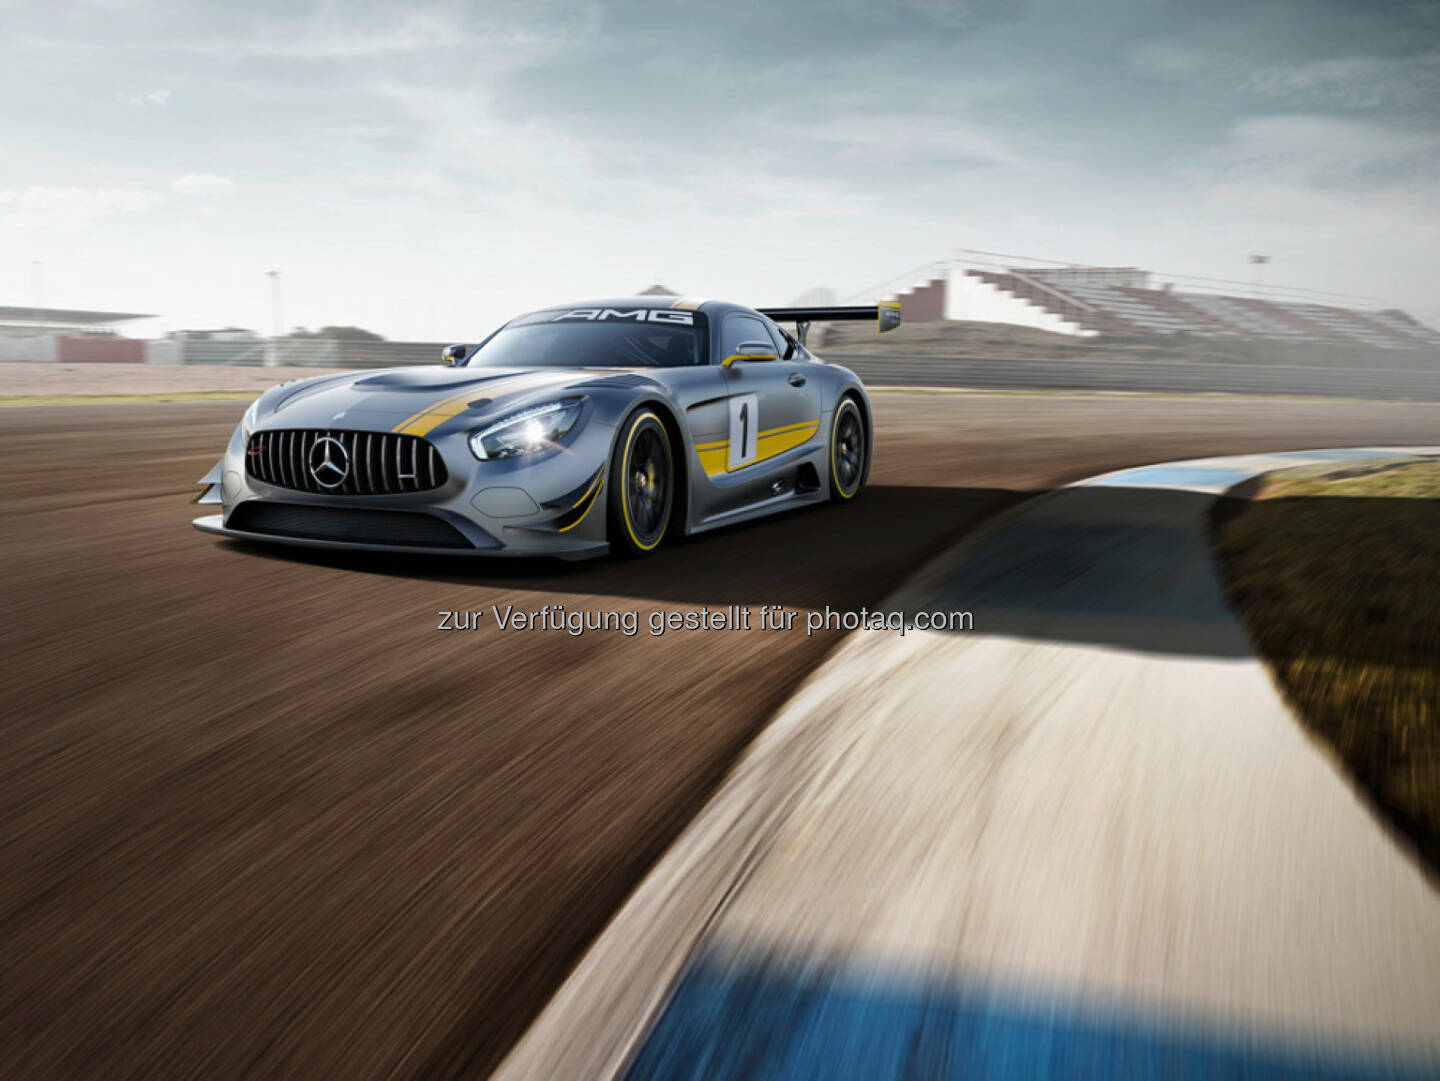 Der neue Mercedes-AMG GT3 debütiert auf dem Genfer Automobilsalon 